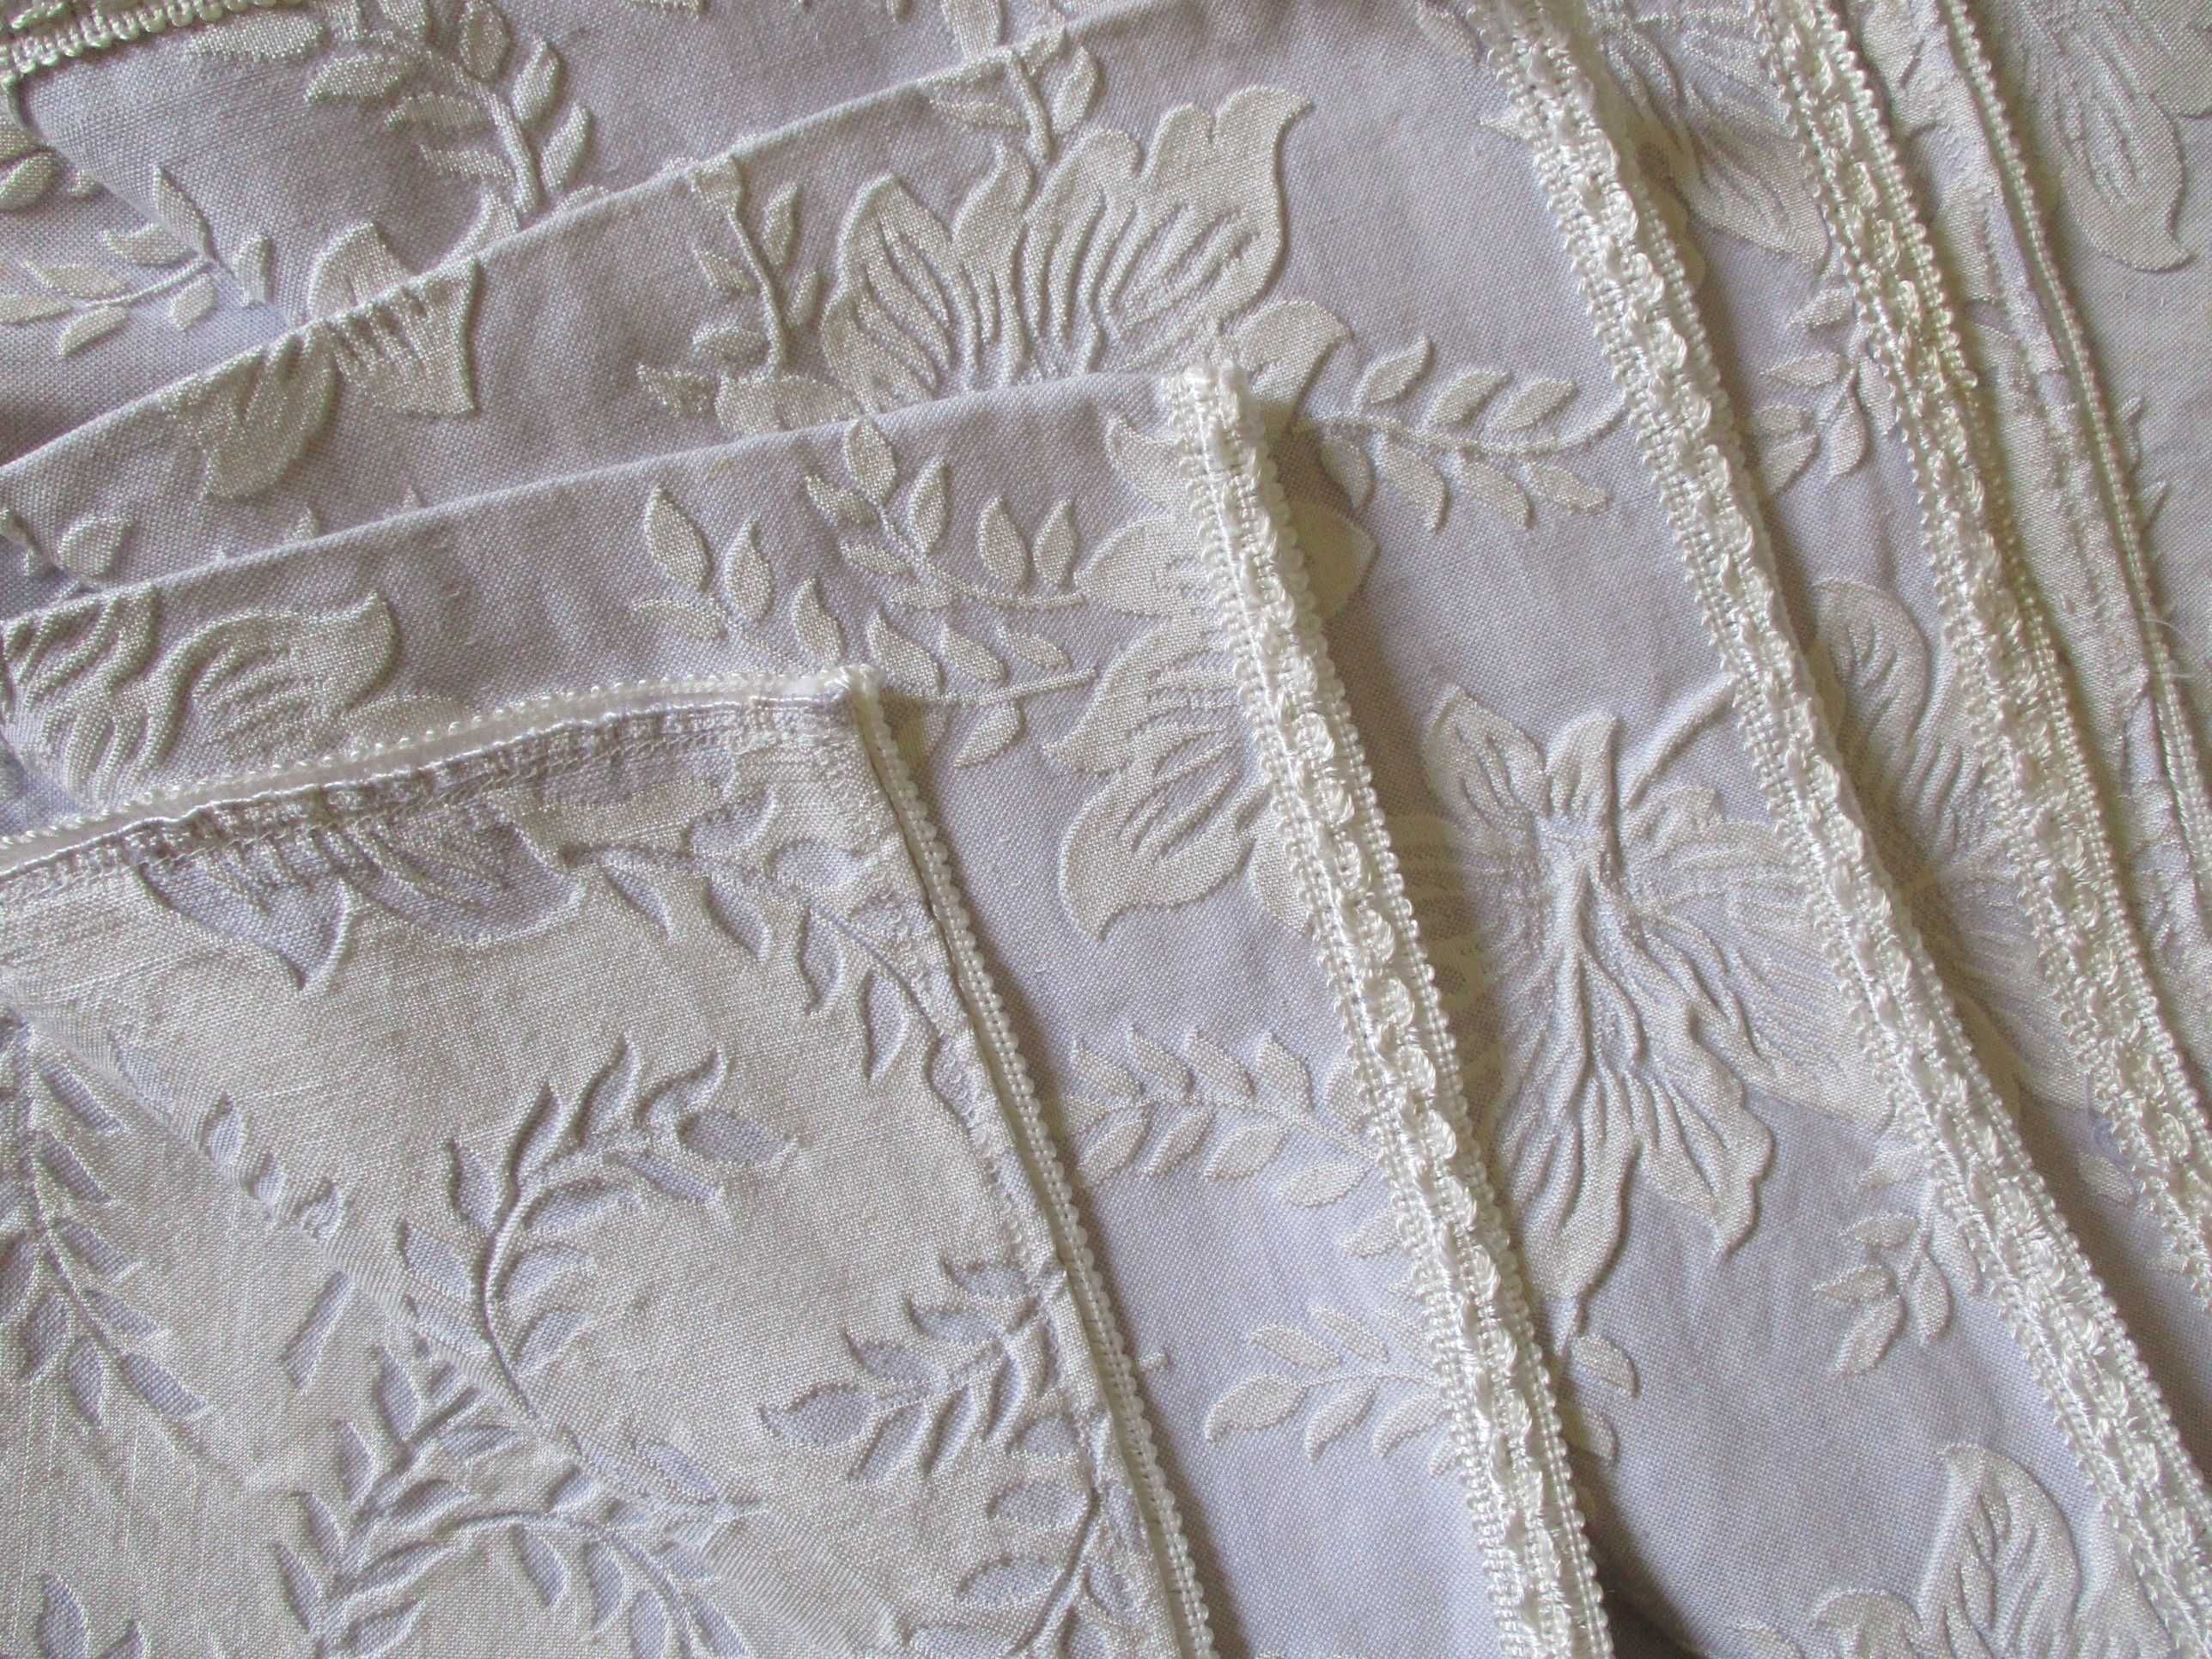 COLCHA NOVA c/ relevo para cama de casal 185 cm x 235 cm em algodão